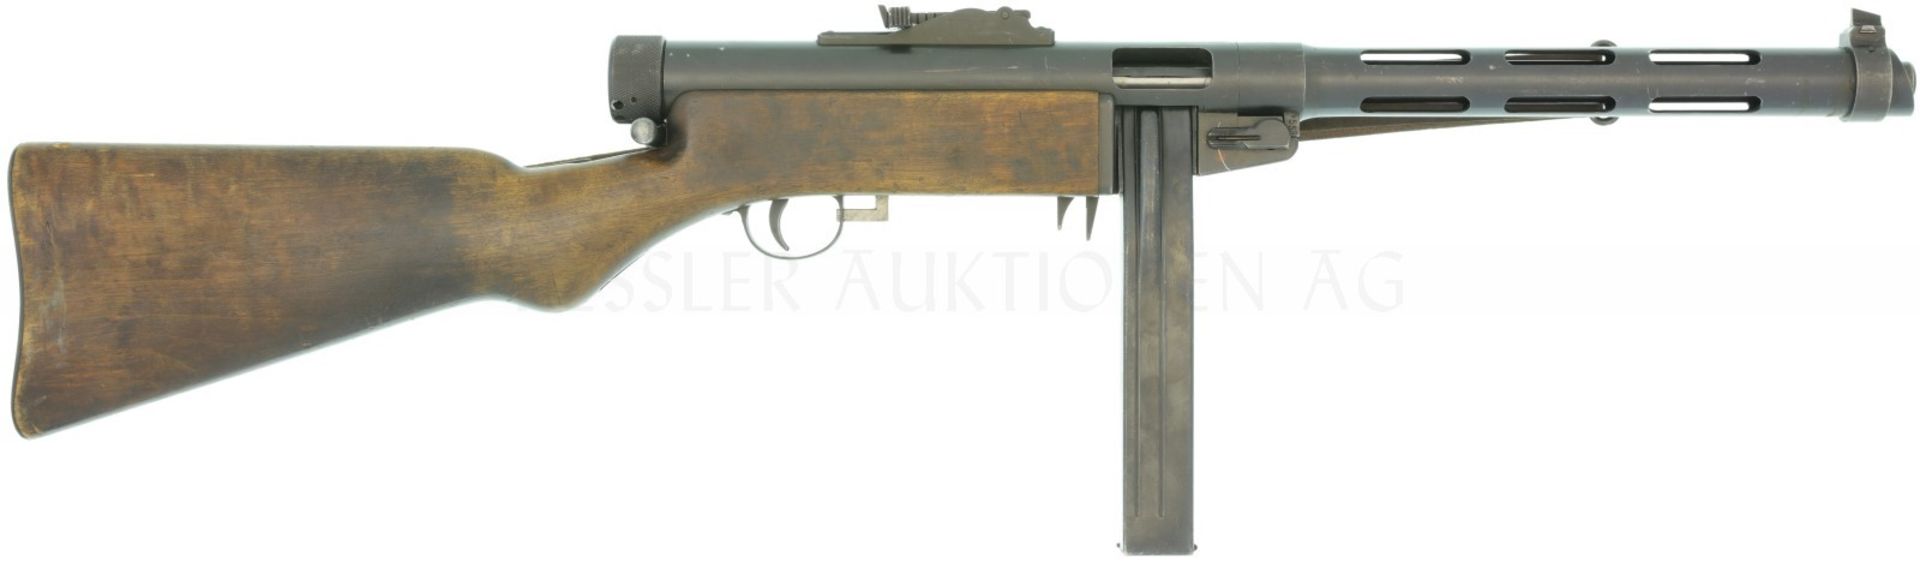 Maschinenpistole, Tikkakoski Suomi, MP 43, Kal. 9mmP